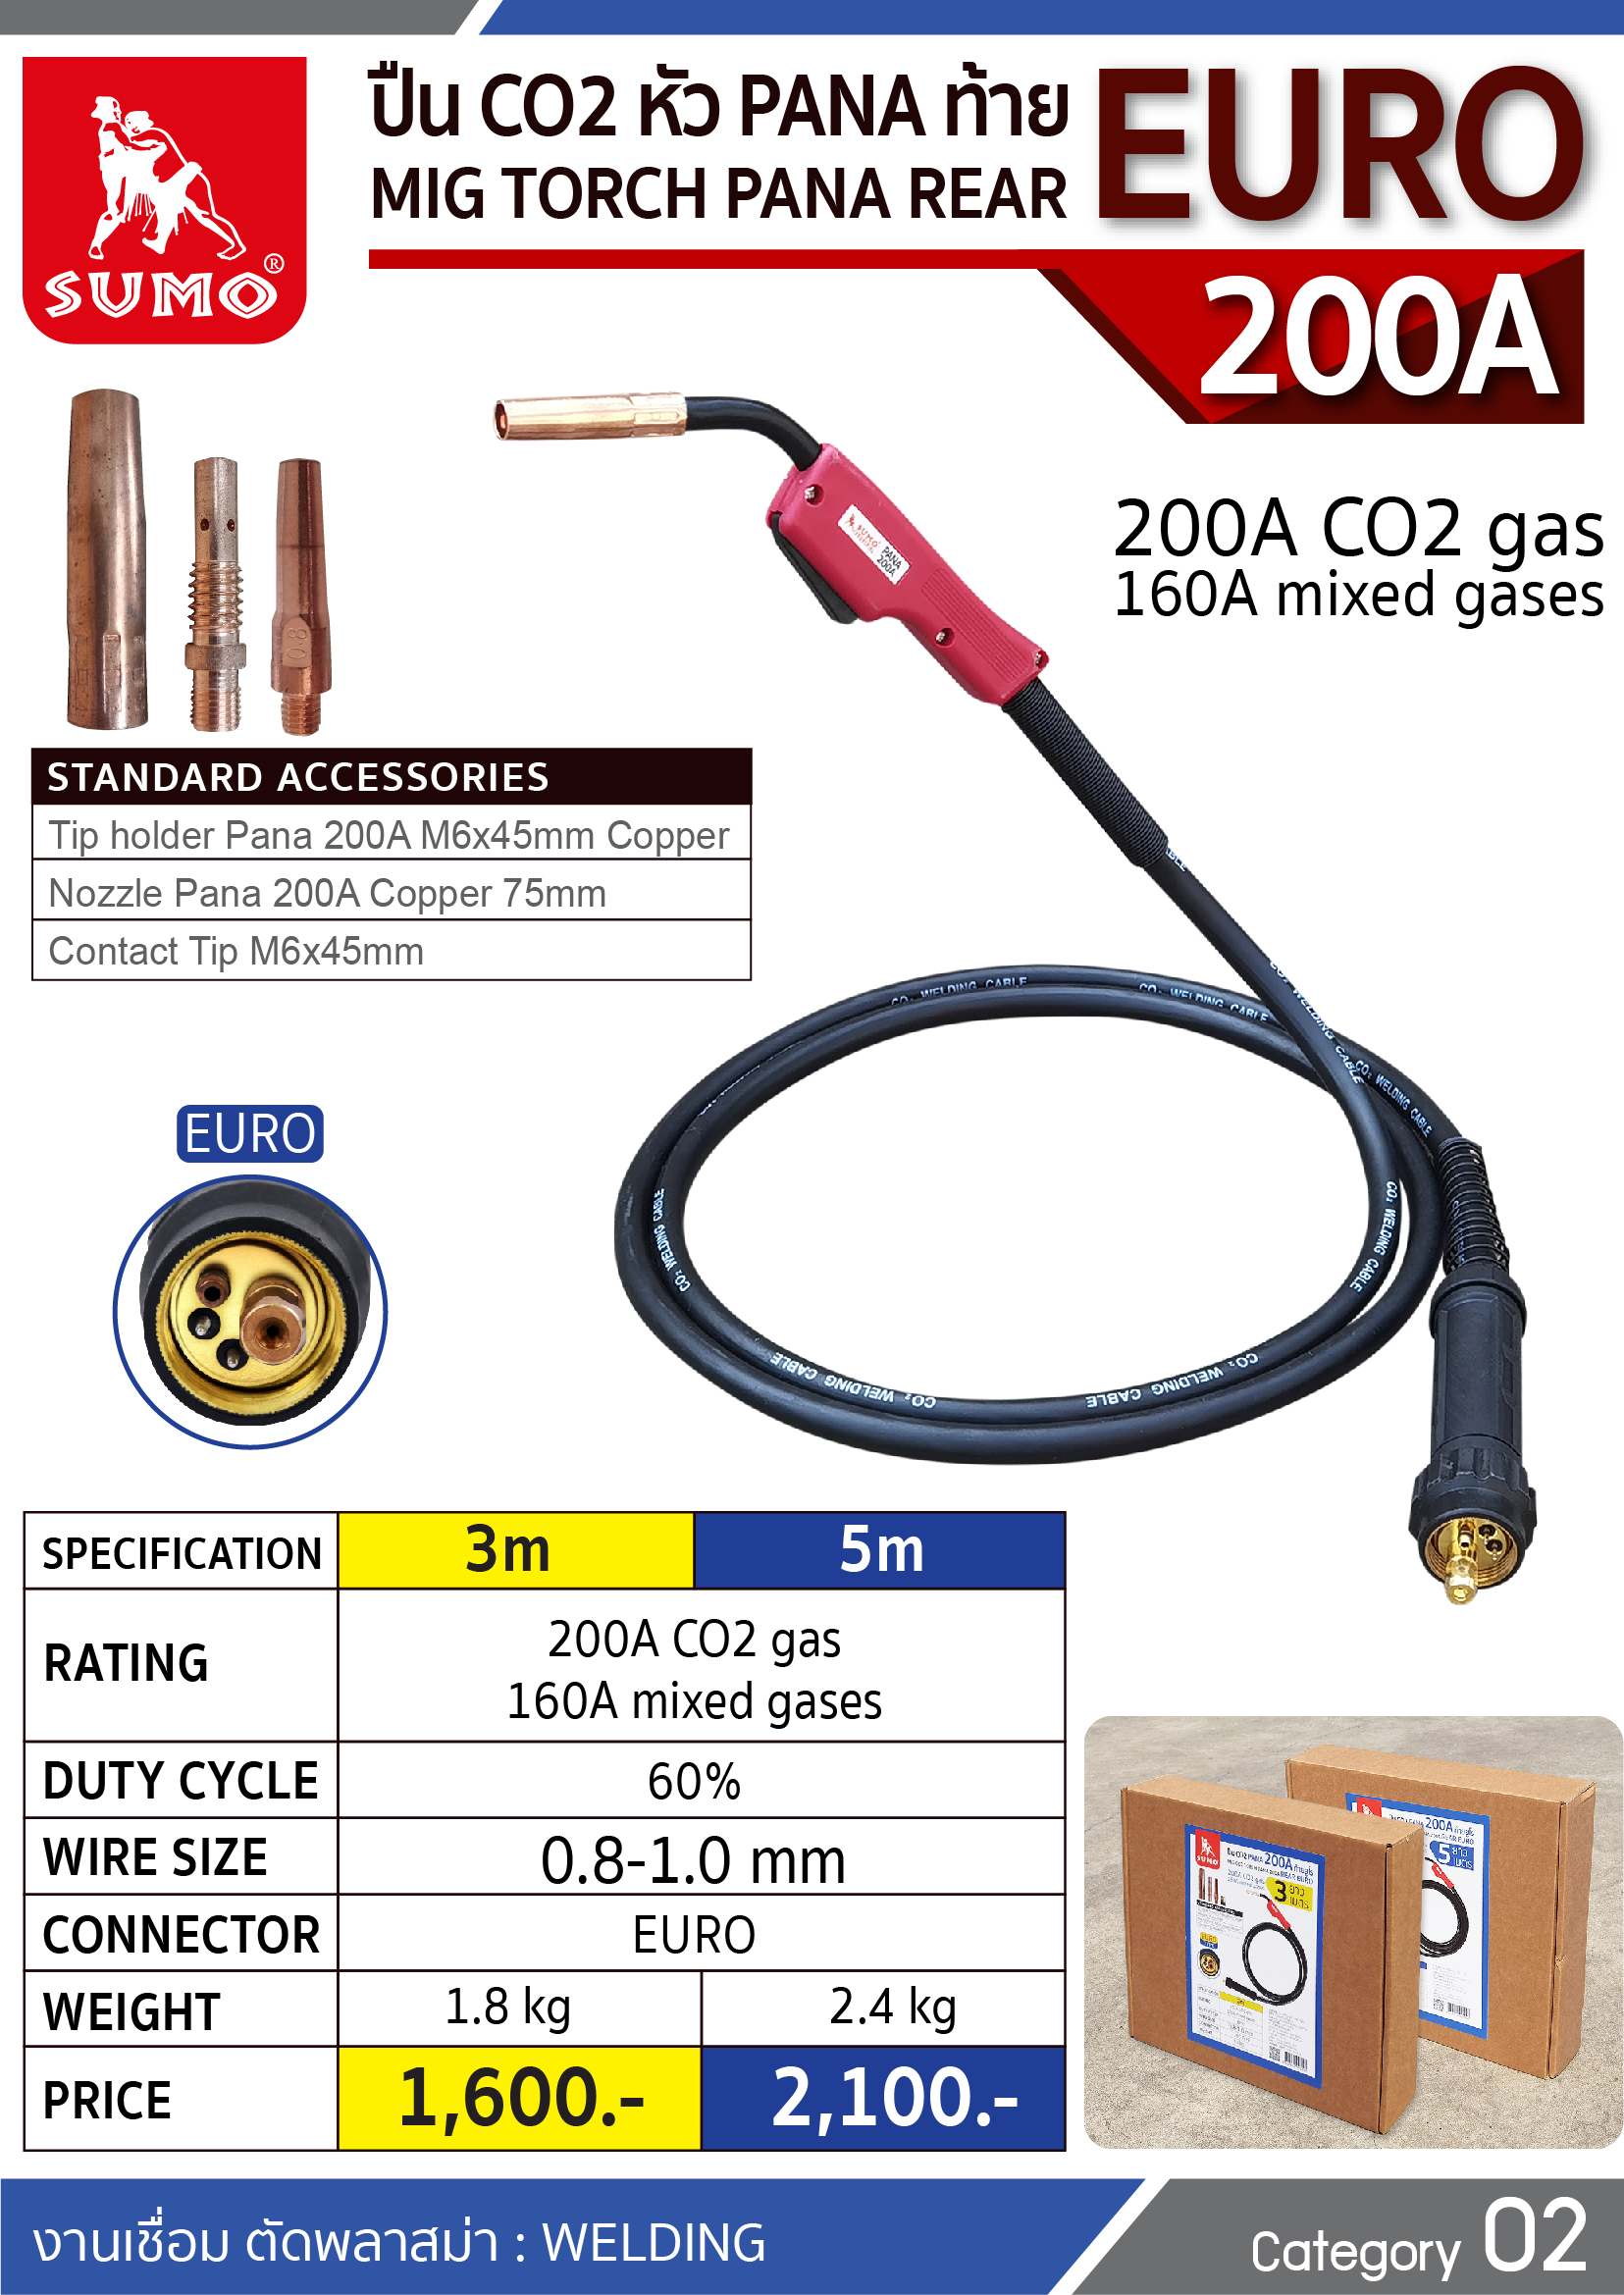 (25/303) ปืน CO2 PANA 200A EURO Tail